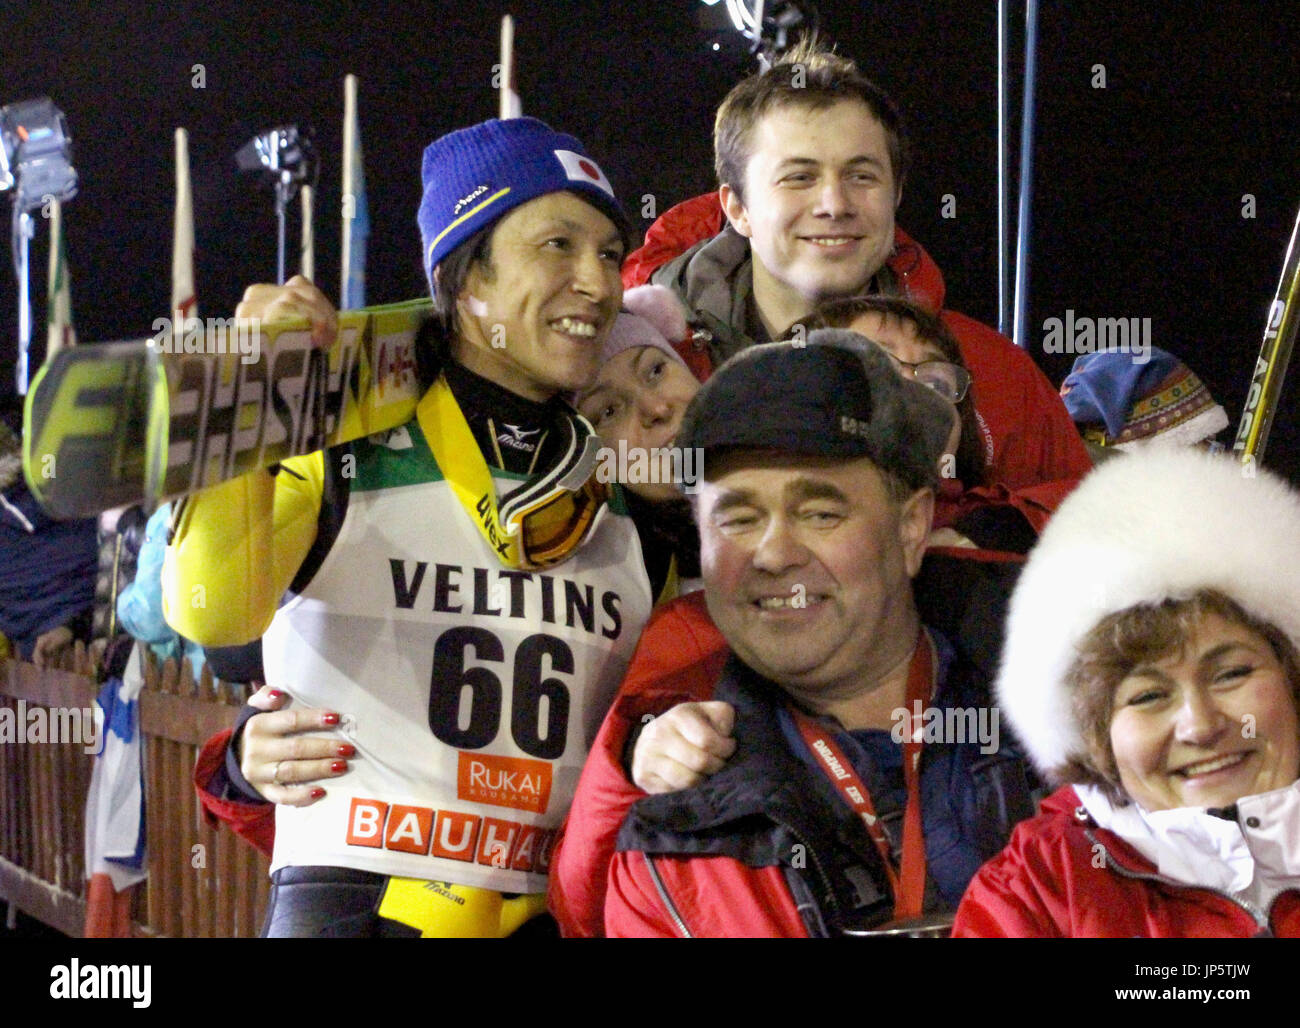 RUKA, Finlandia - Japón Noriaki Kasai(L) plantea con ventiladores para fotos tras el atado de oro con la suiza Simon Amman en el FIS World Cup en la competición de salto de esquí de Ruka, Finlandia, en Nov 29, 2014. Kasai, que ya es el hombre más viejo en ganar un evento de la Copa del Mundo, extendió su campeonato marca longevidad a la edad de 42 años, cinco meses, con su primera victoria desde el mes de enero. (Kyodo) Foto de stock